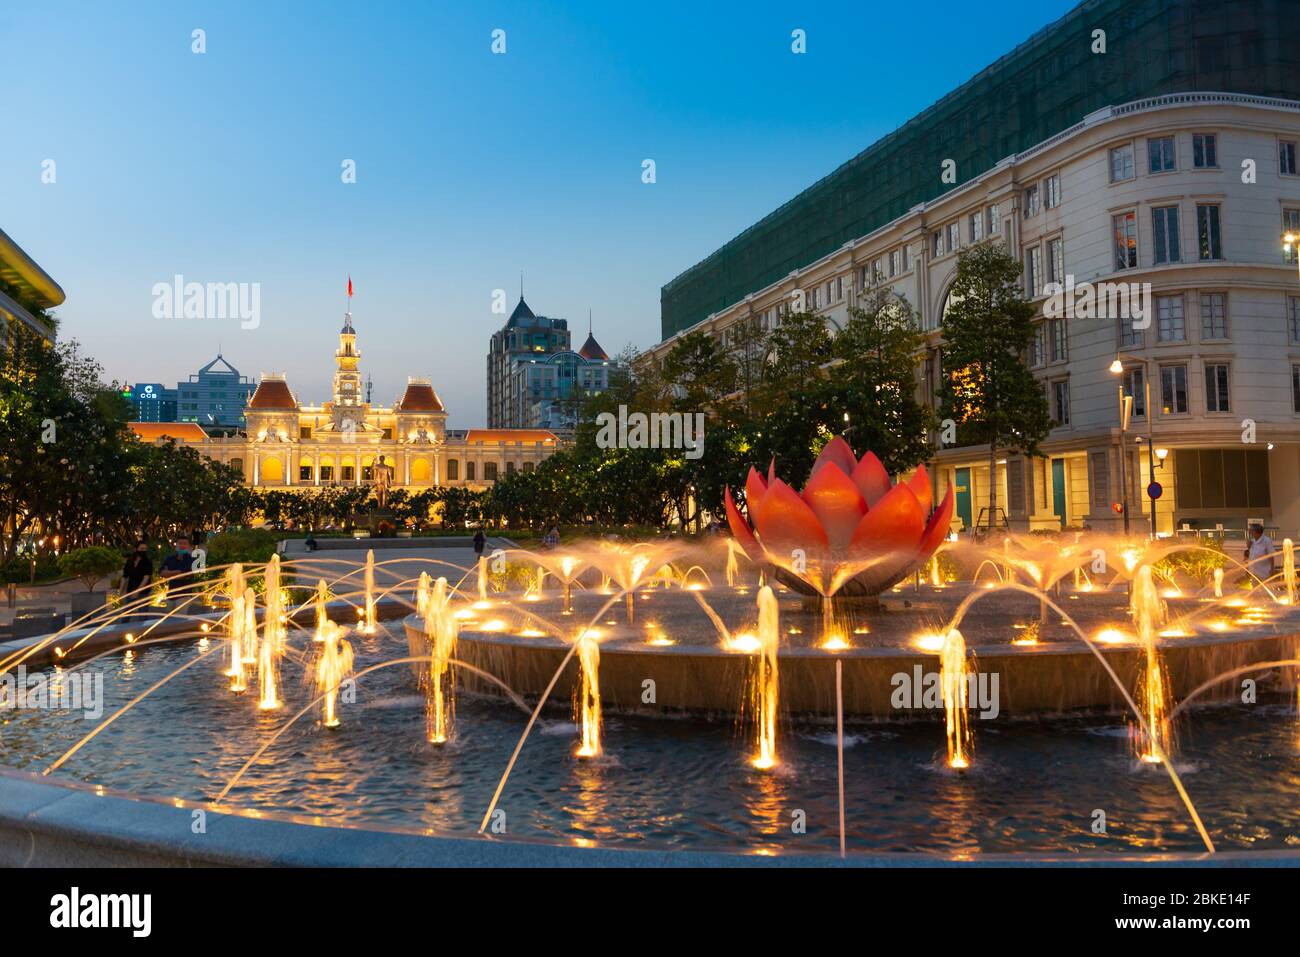 Fountain And Square Near Ho Chi Minh City Hall, Vietnam Stock Photo